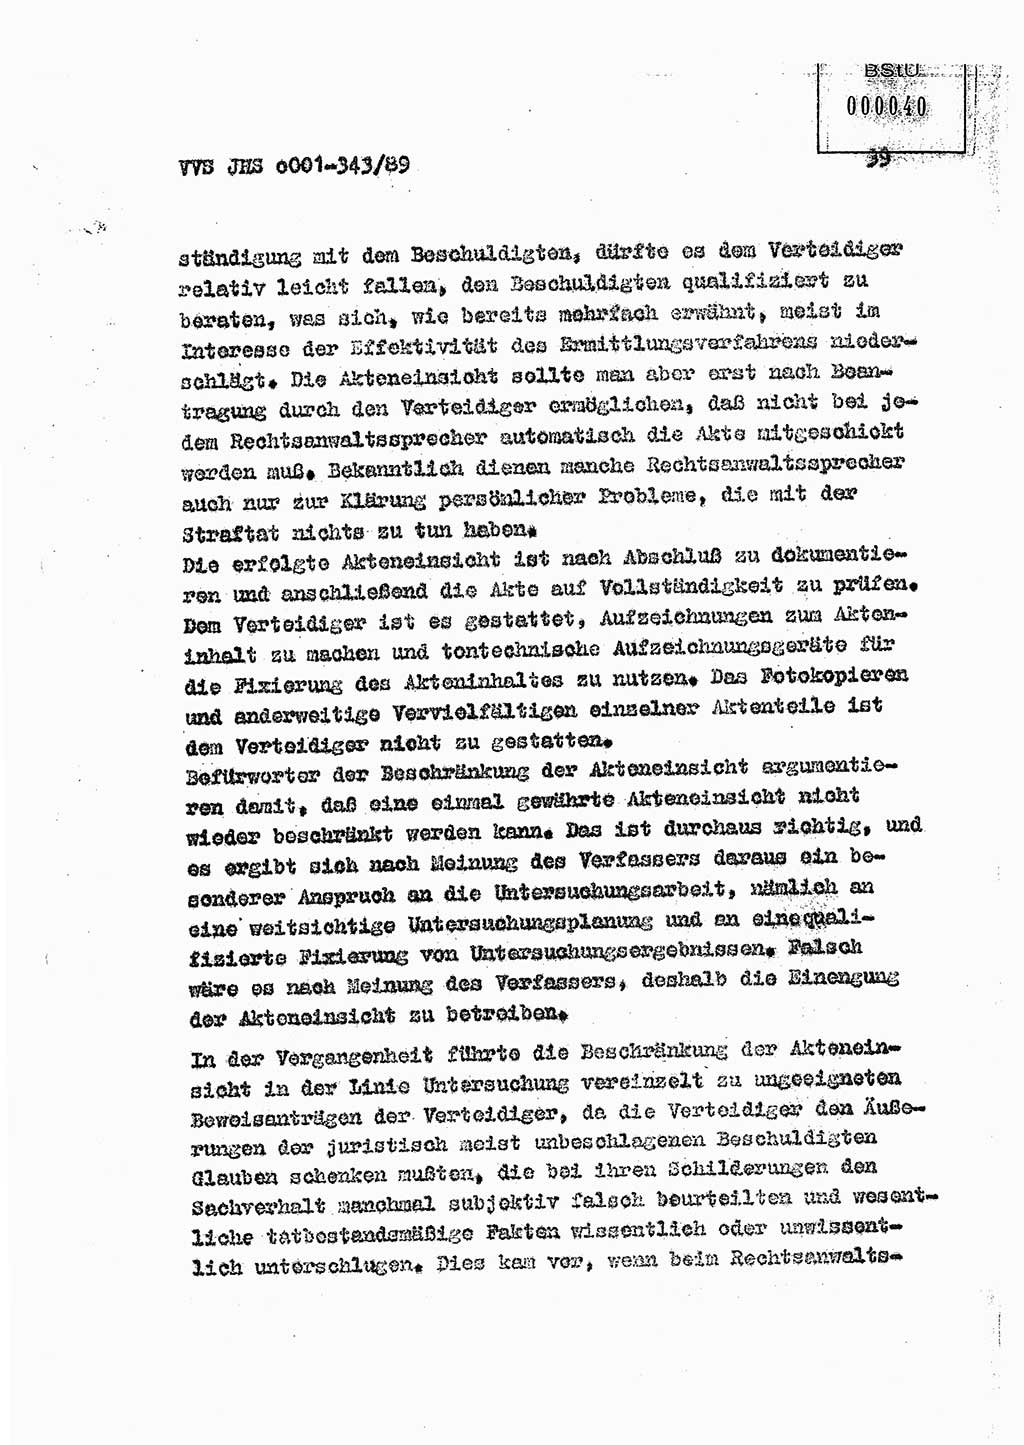 Diplomarbeit Offiziersschüler Axel Henschke (HA Ⅸ/9), Ministerium für Staatssicherheit (MfS) [Deutsche Demokratische Republik (DDR)], Juristische Hochschule (JHS), Vertrauliche Verschlußsache (VVS) o001-343/89, Potsdam 1989, Seite 39 (Dipl.-Arb. MfS DDR JHS VVS o001-343/89 1989, S. 39)